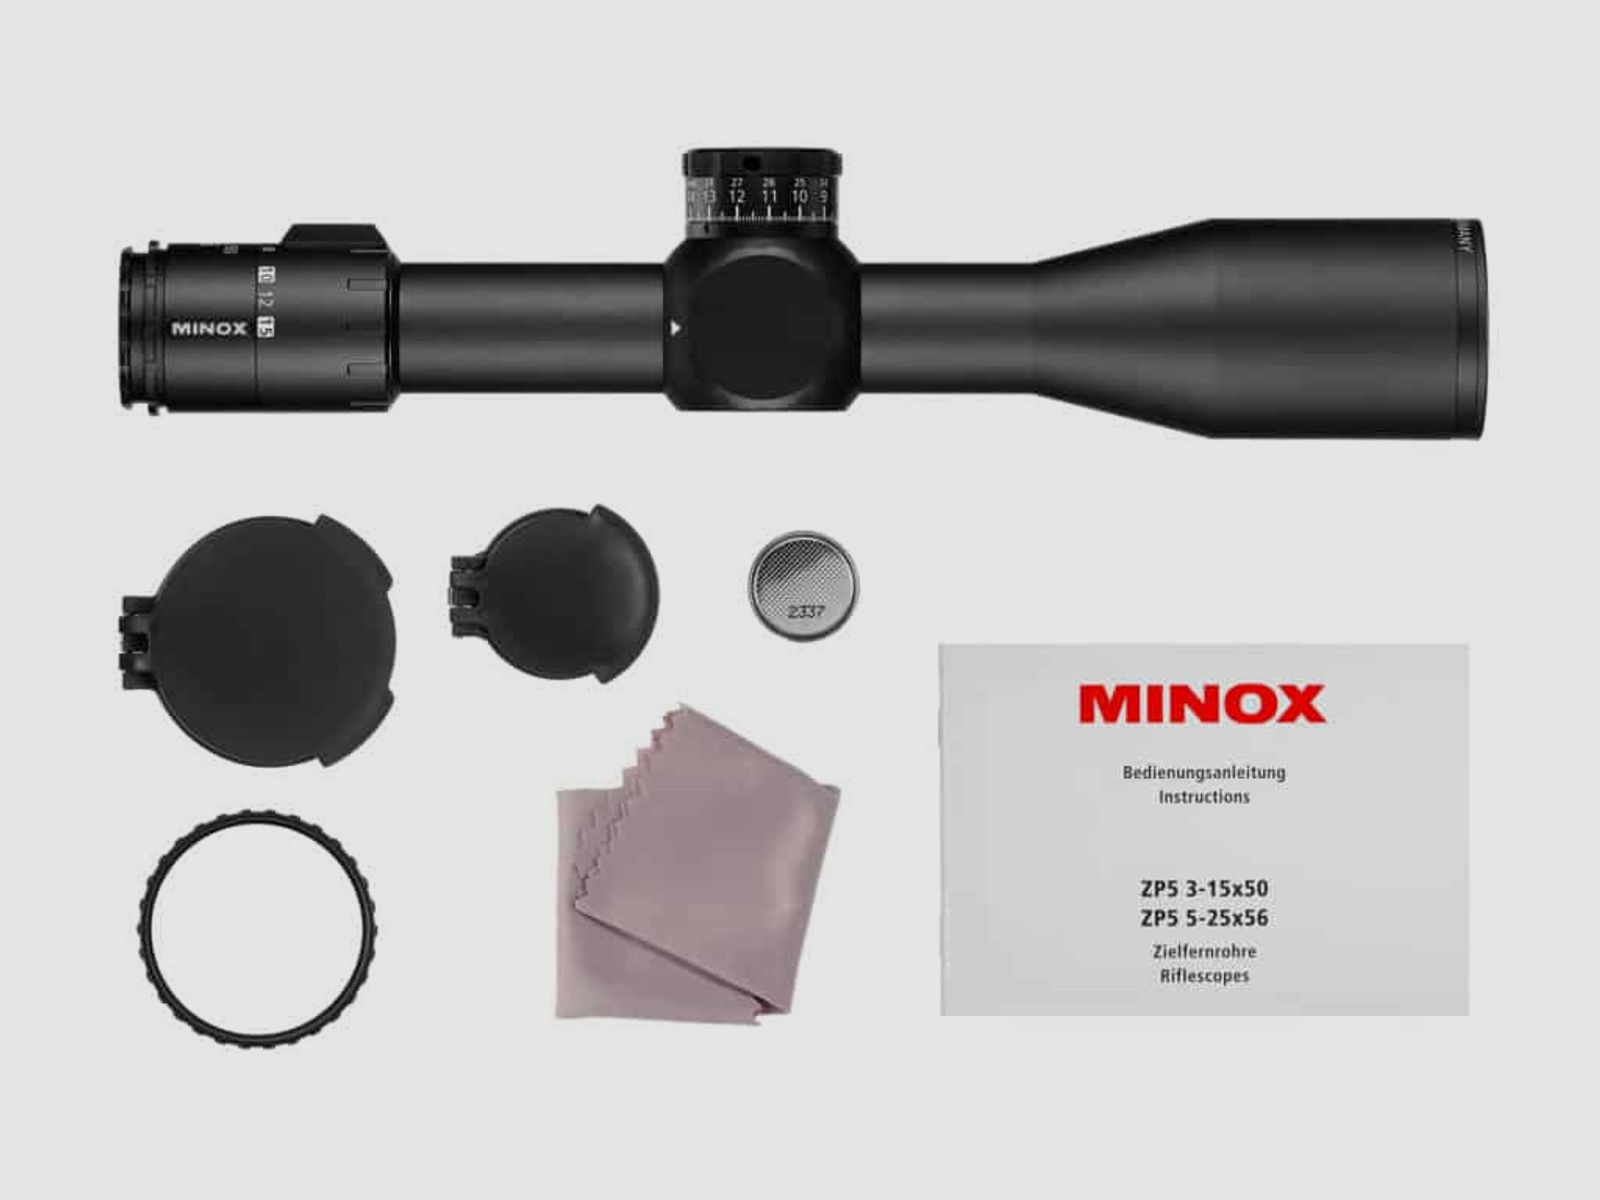 Minox Professional Zielfernrohr ZP5 5-25x56 Absehen MR5